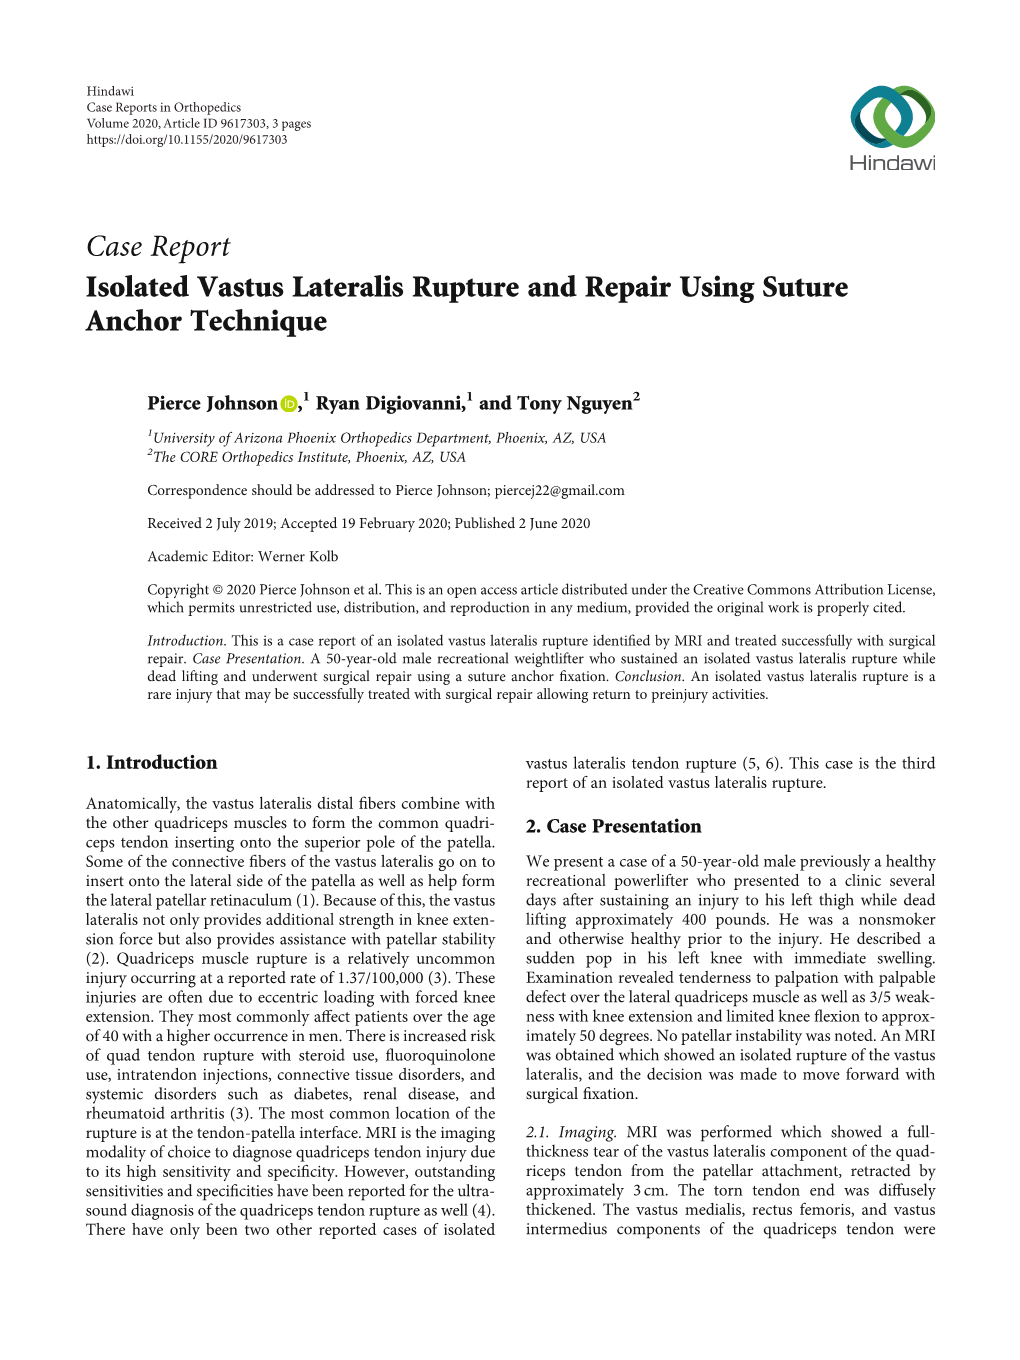 Isolated Vastus Lateralis Rupture and Repair Using Suture Anchor Technique